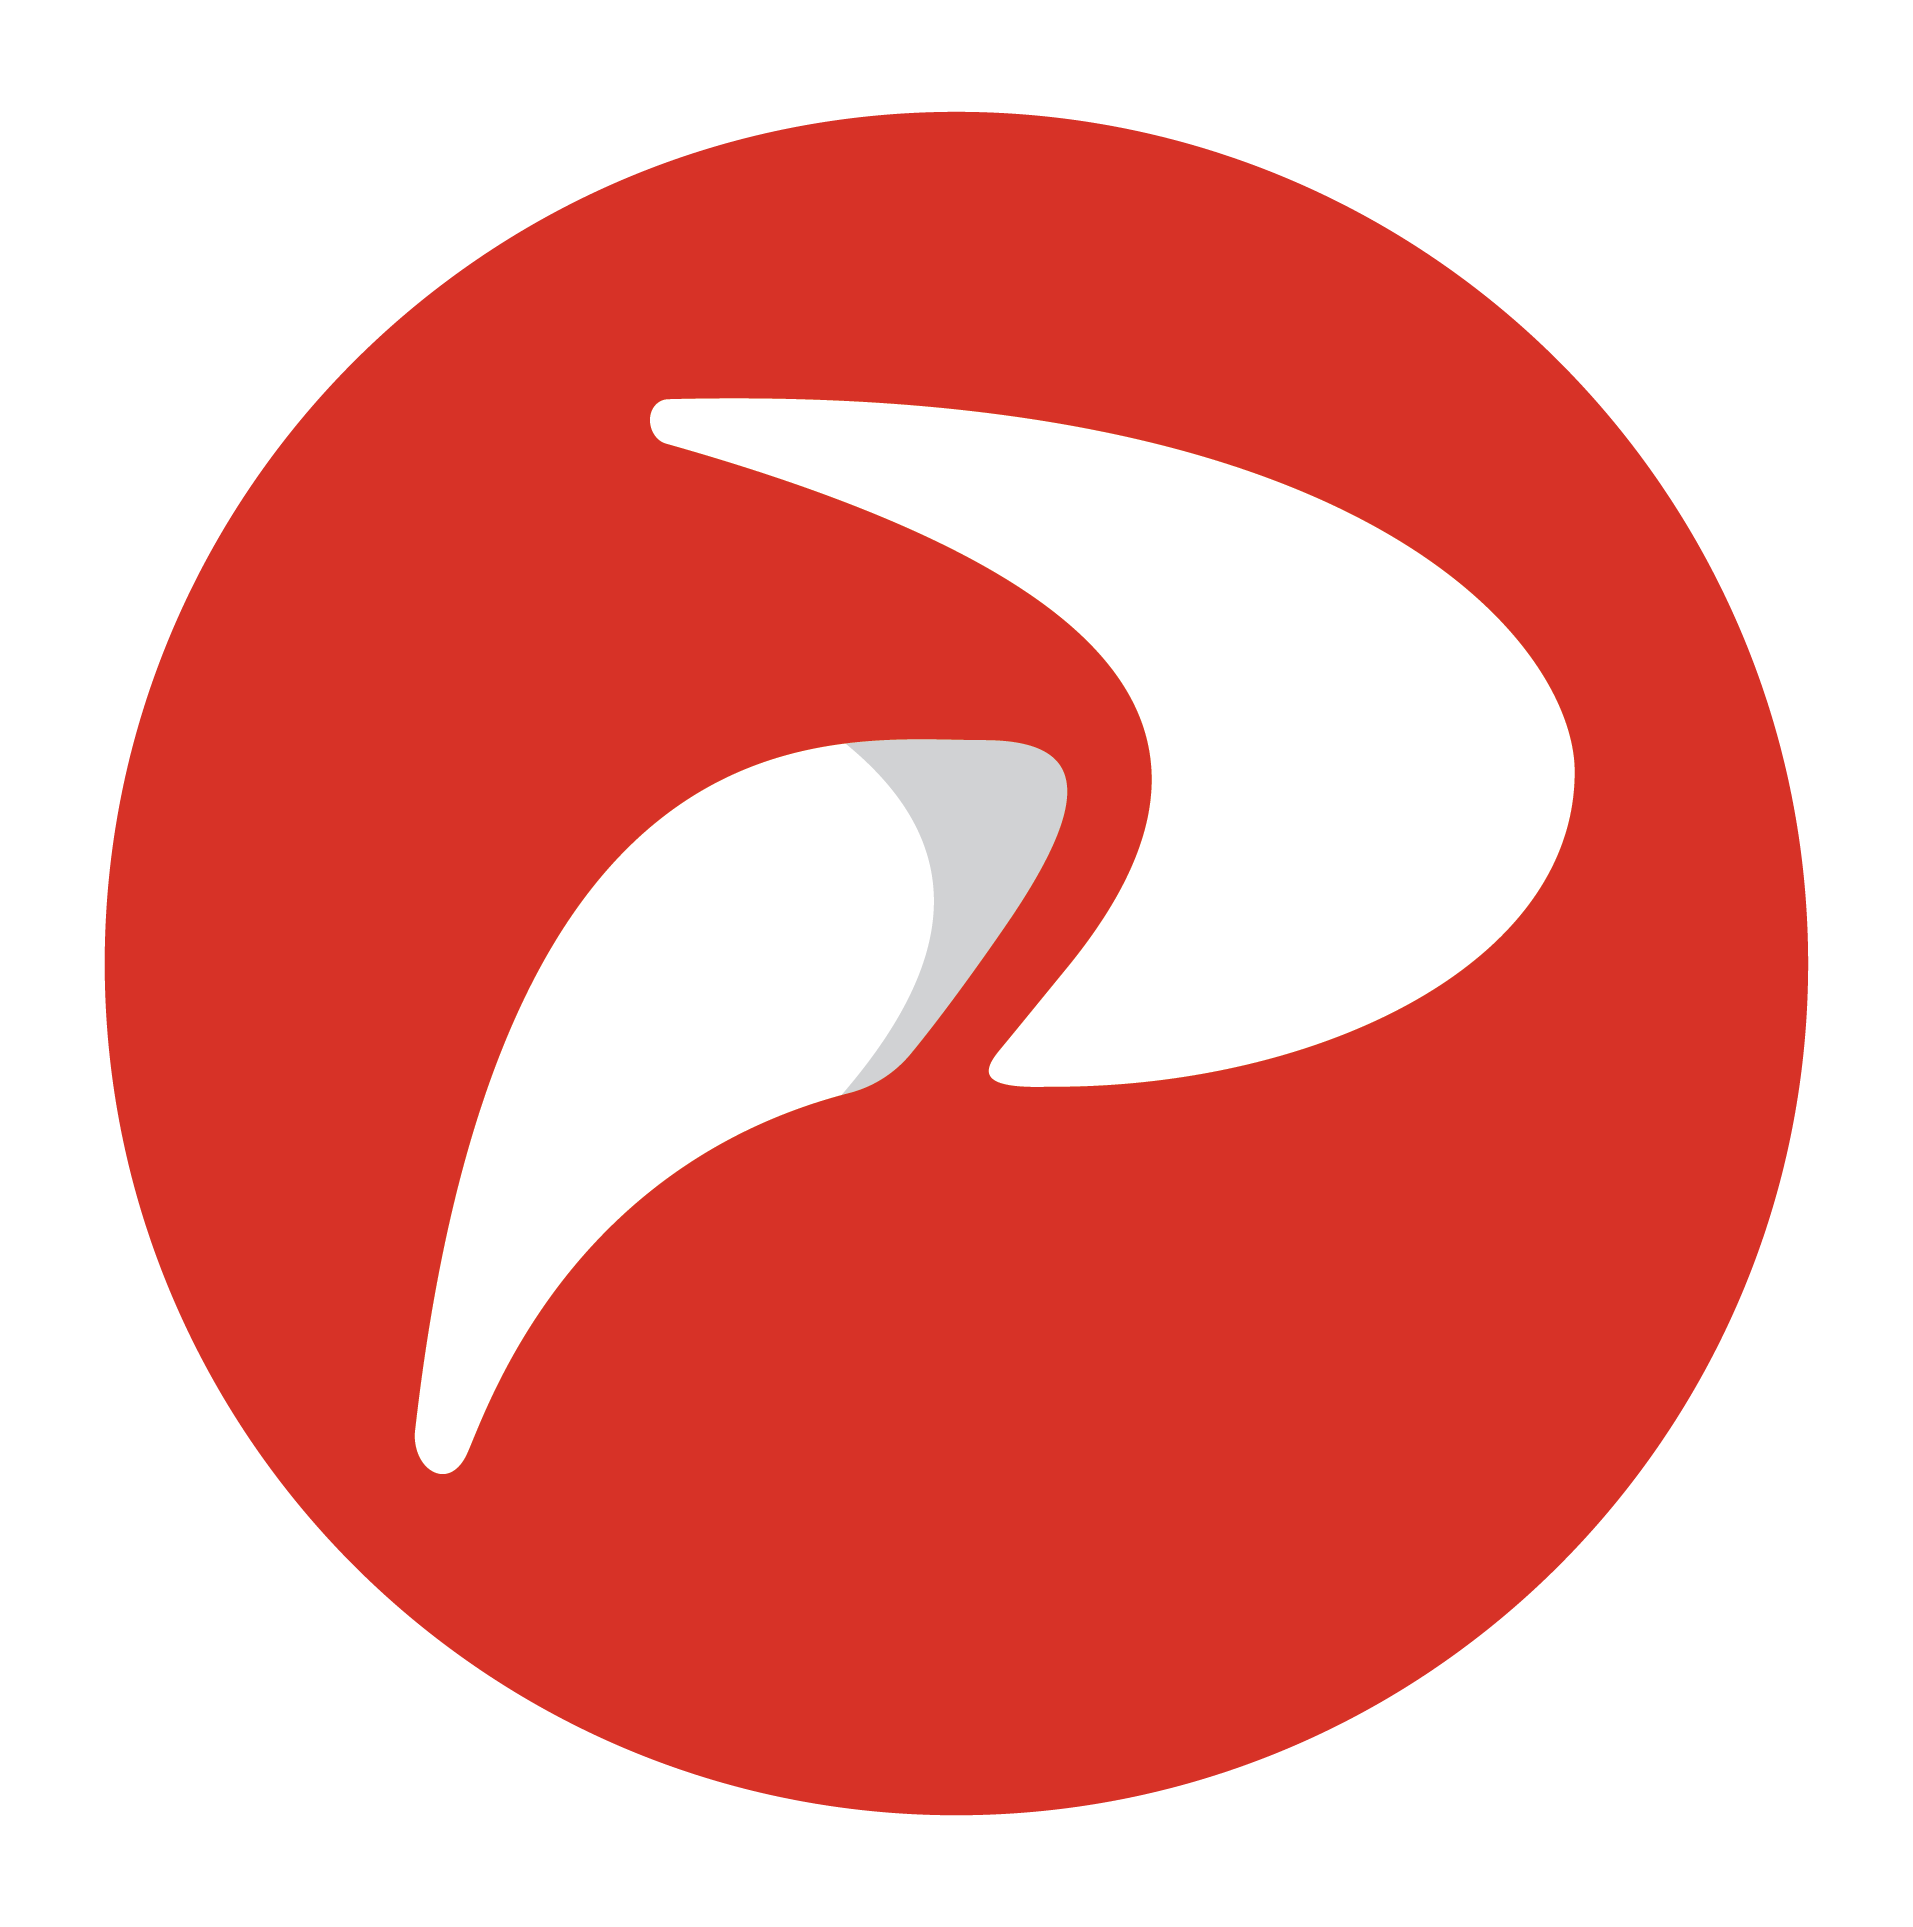 Penquin logo